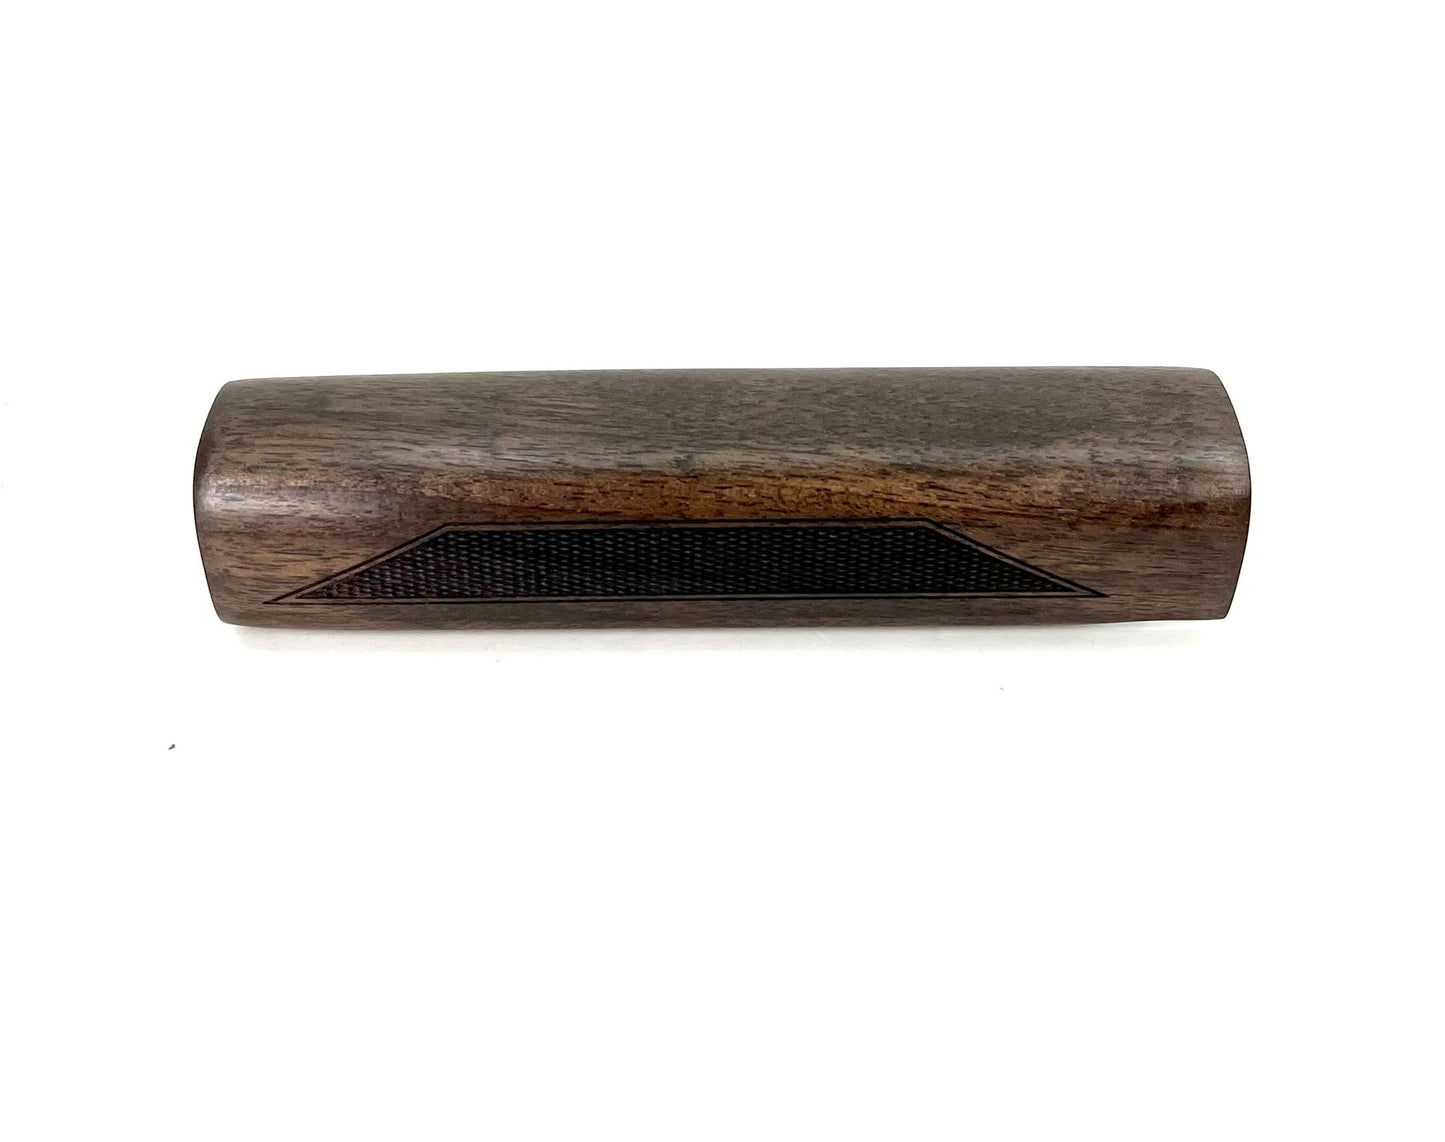 Mossberg Shockwave Turkish Walnut Wood Furniture Kit, FOREND & GRIP ( Fits 590 Model ONLY)